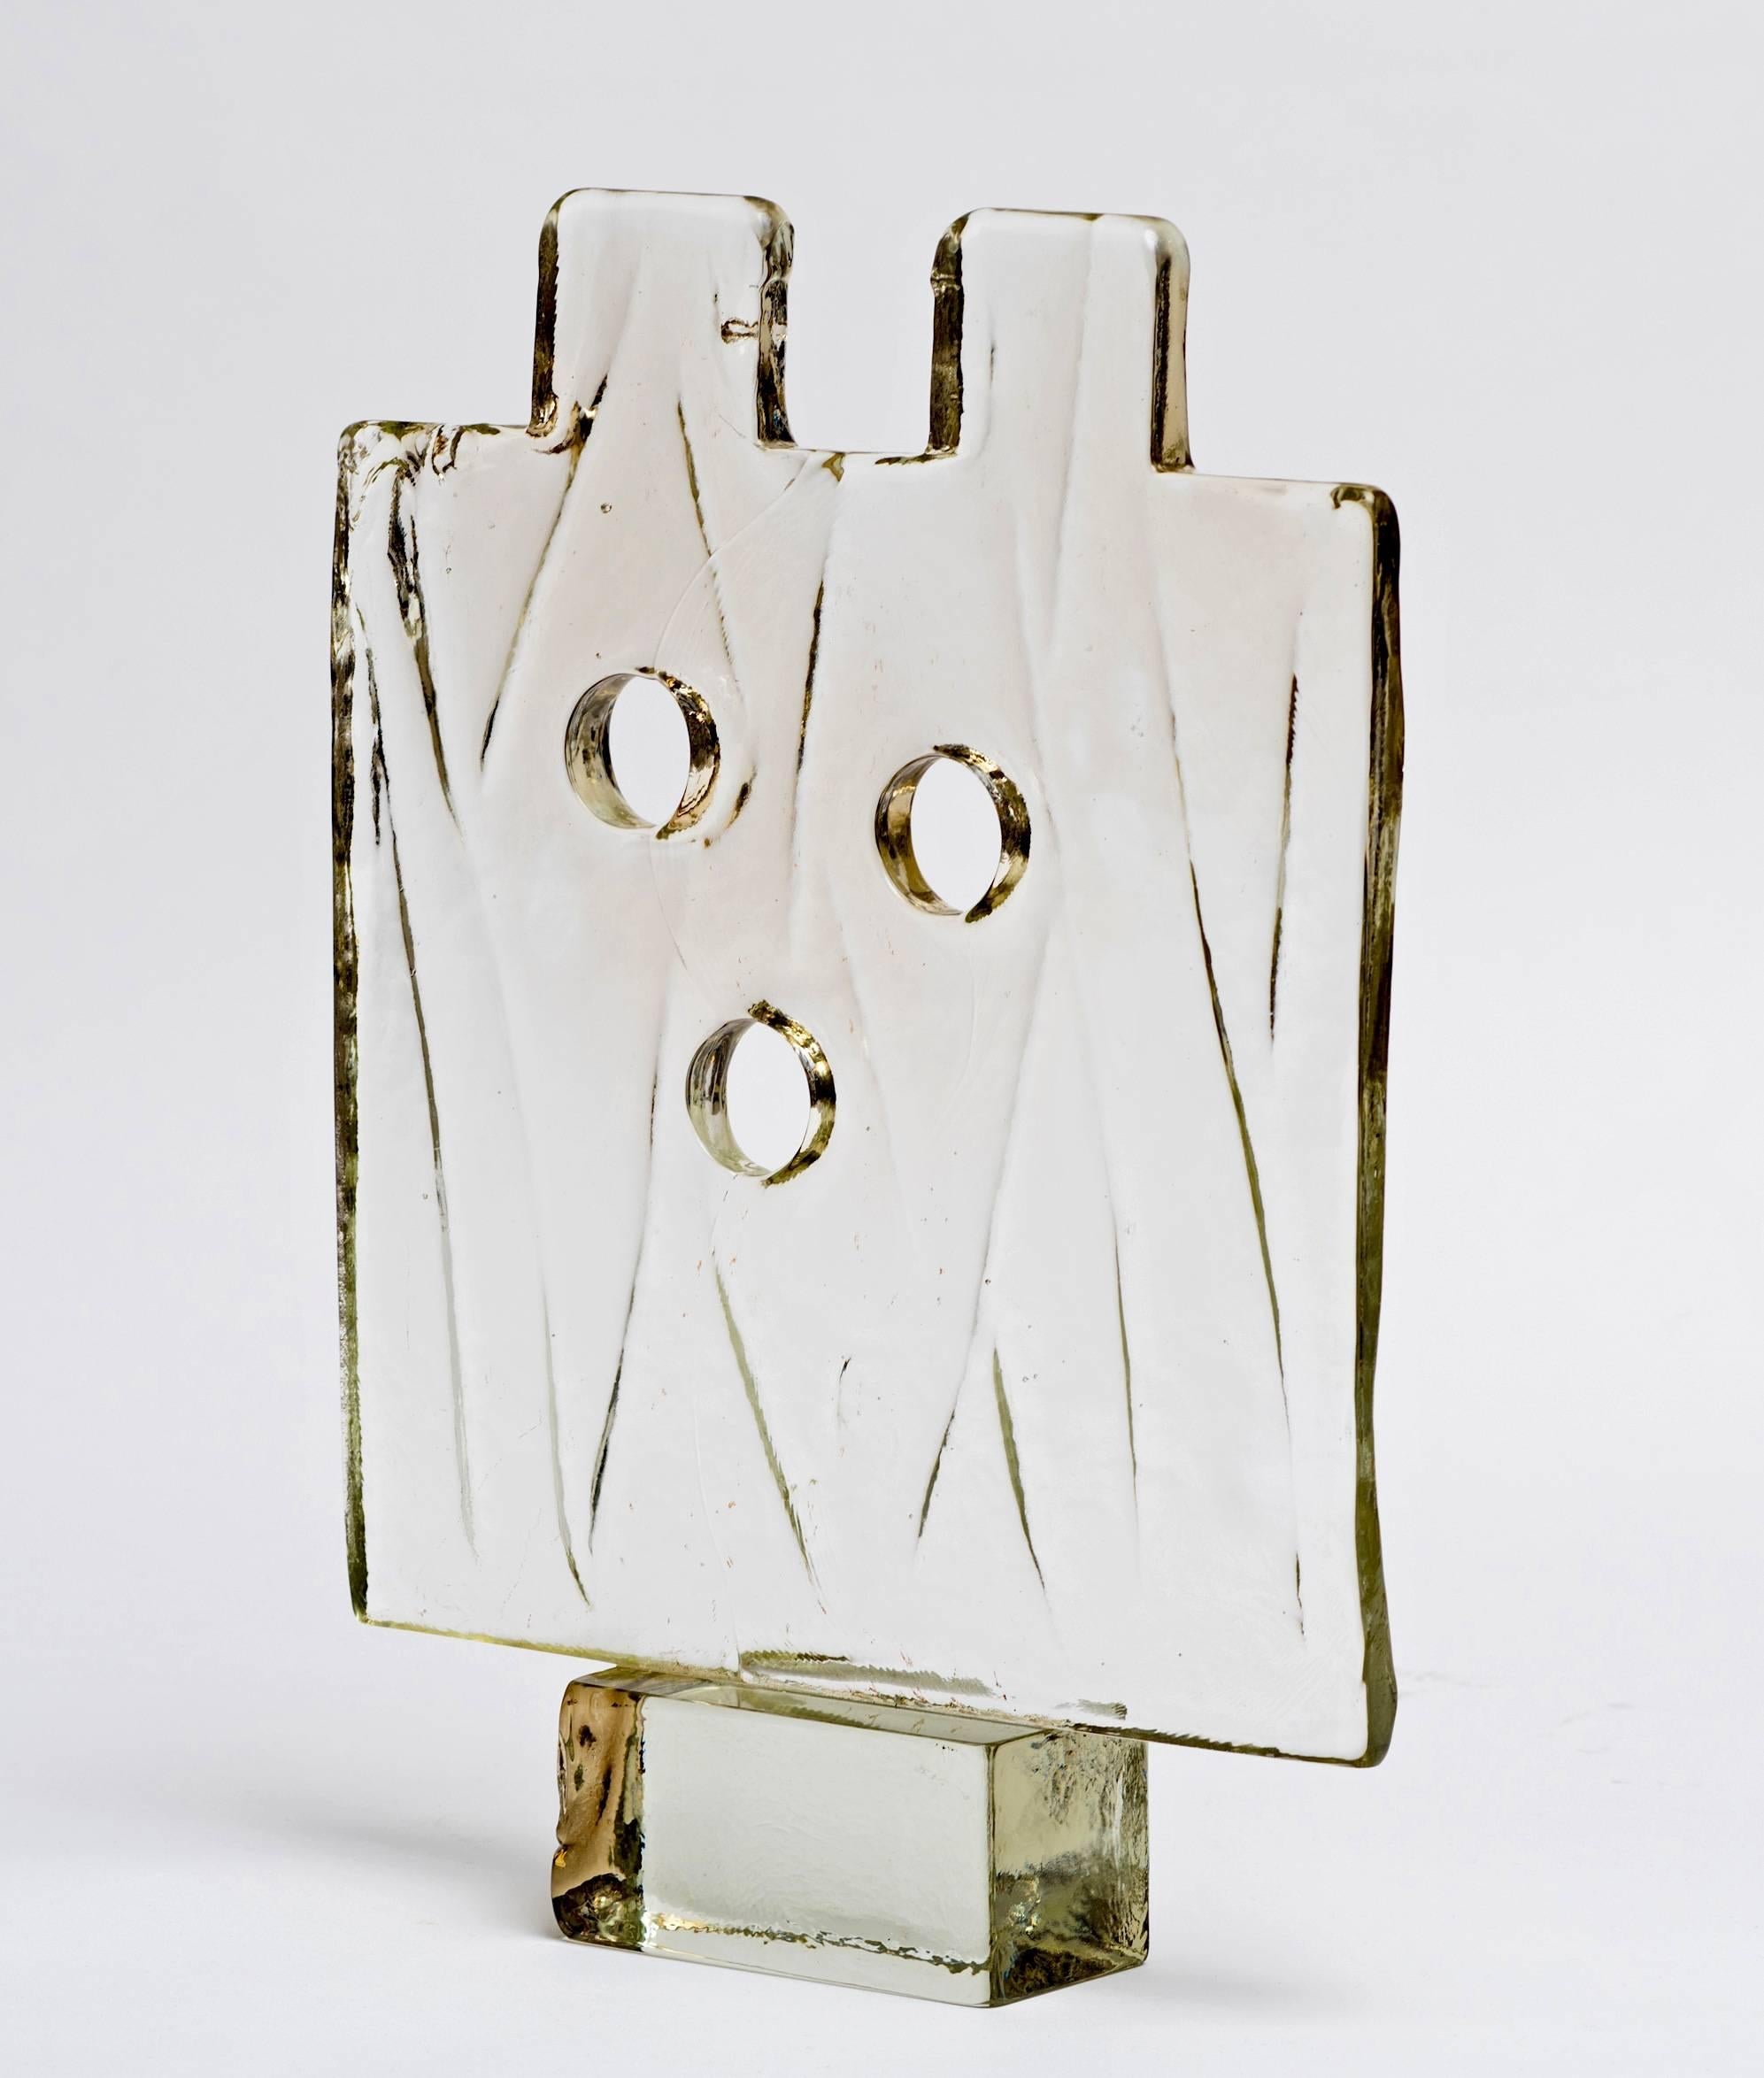 Molded Luciano Gaspari Murano Glass Block Sculpture